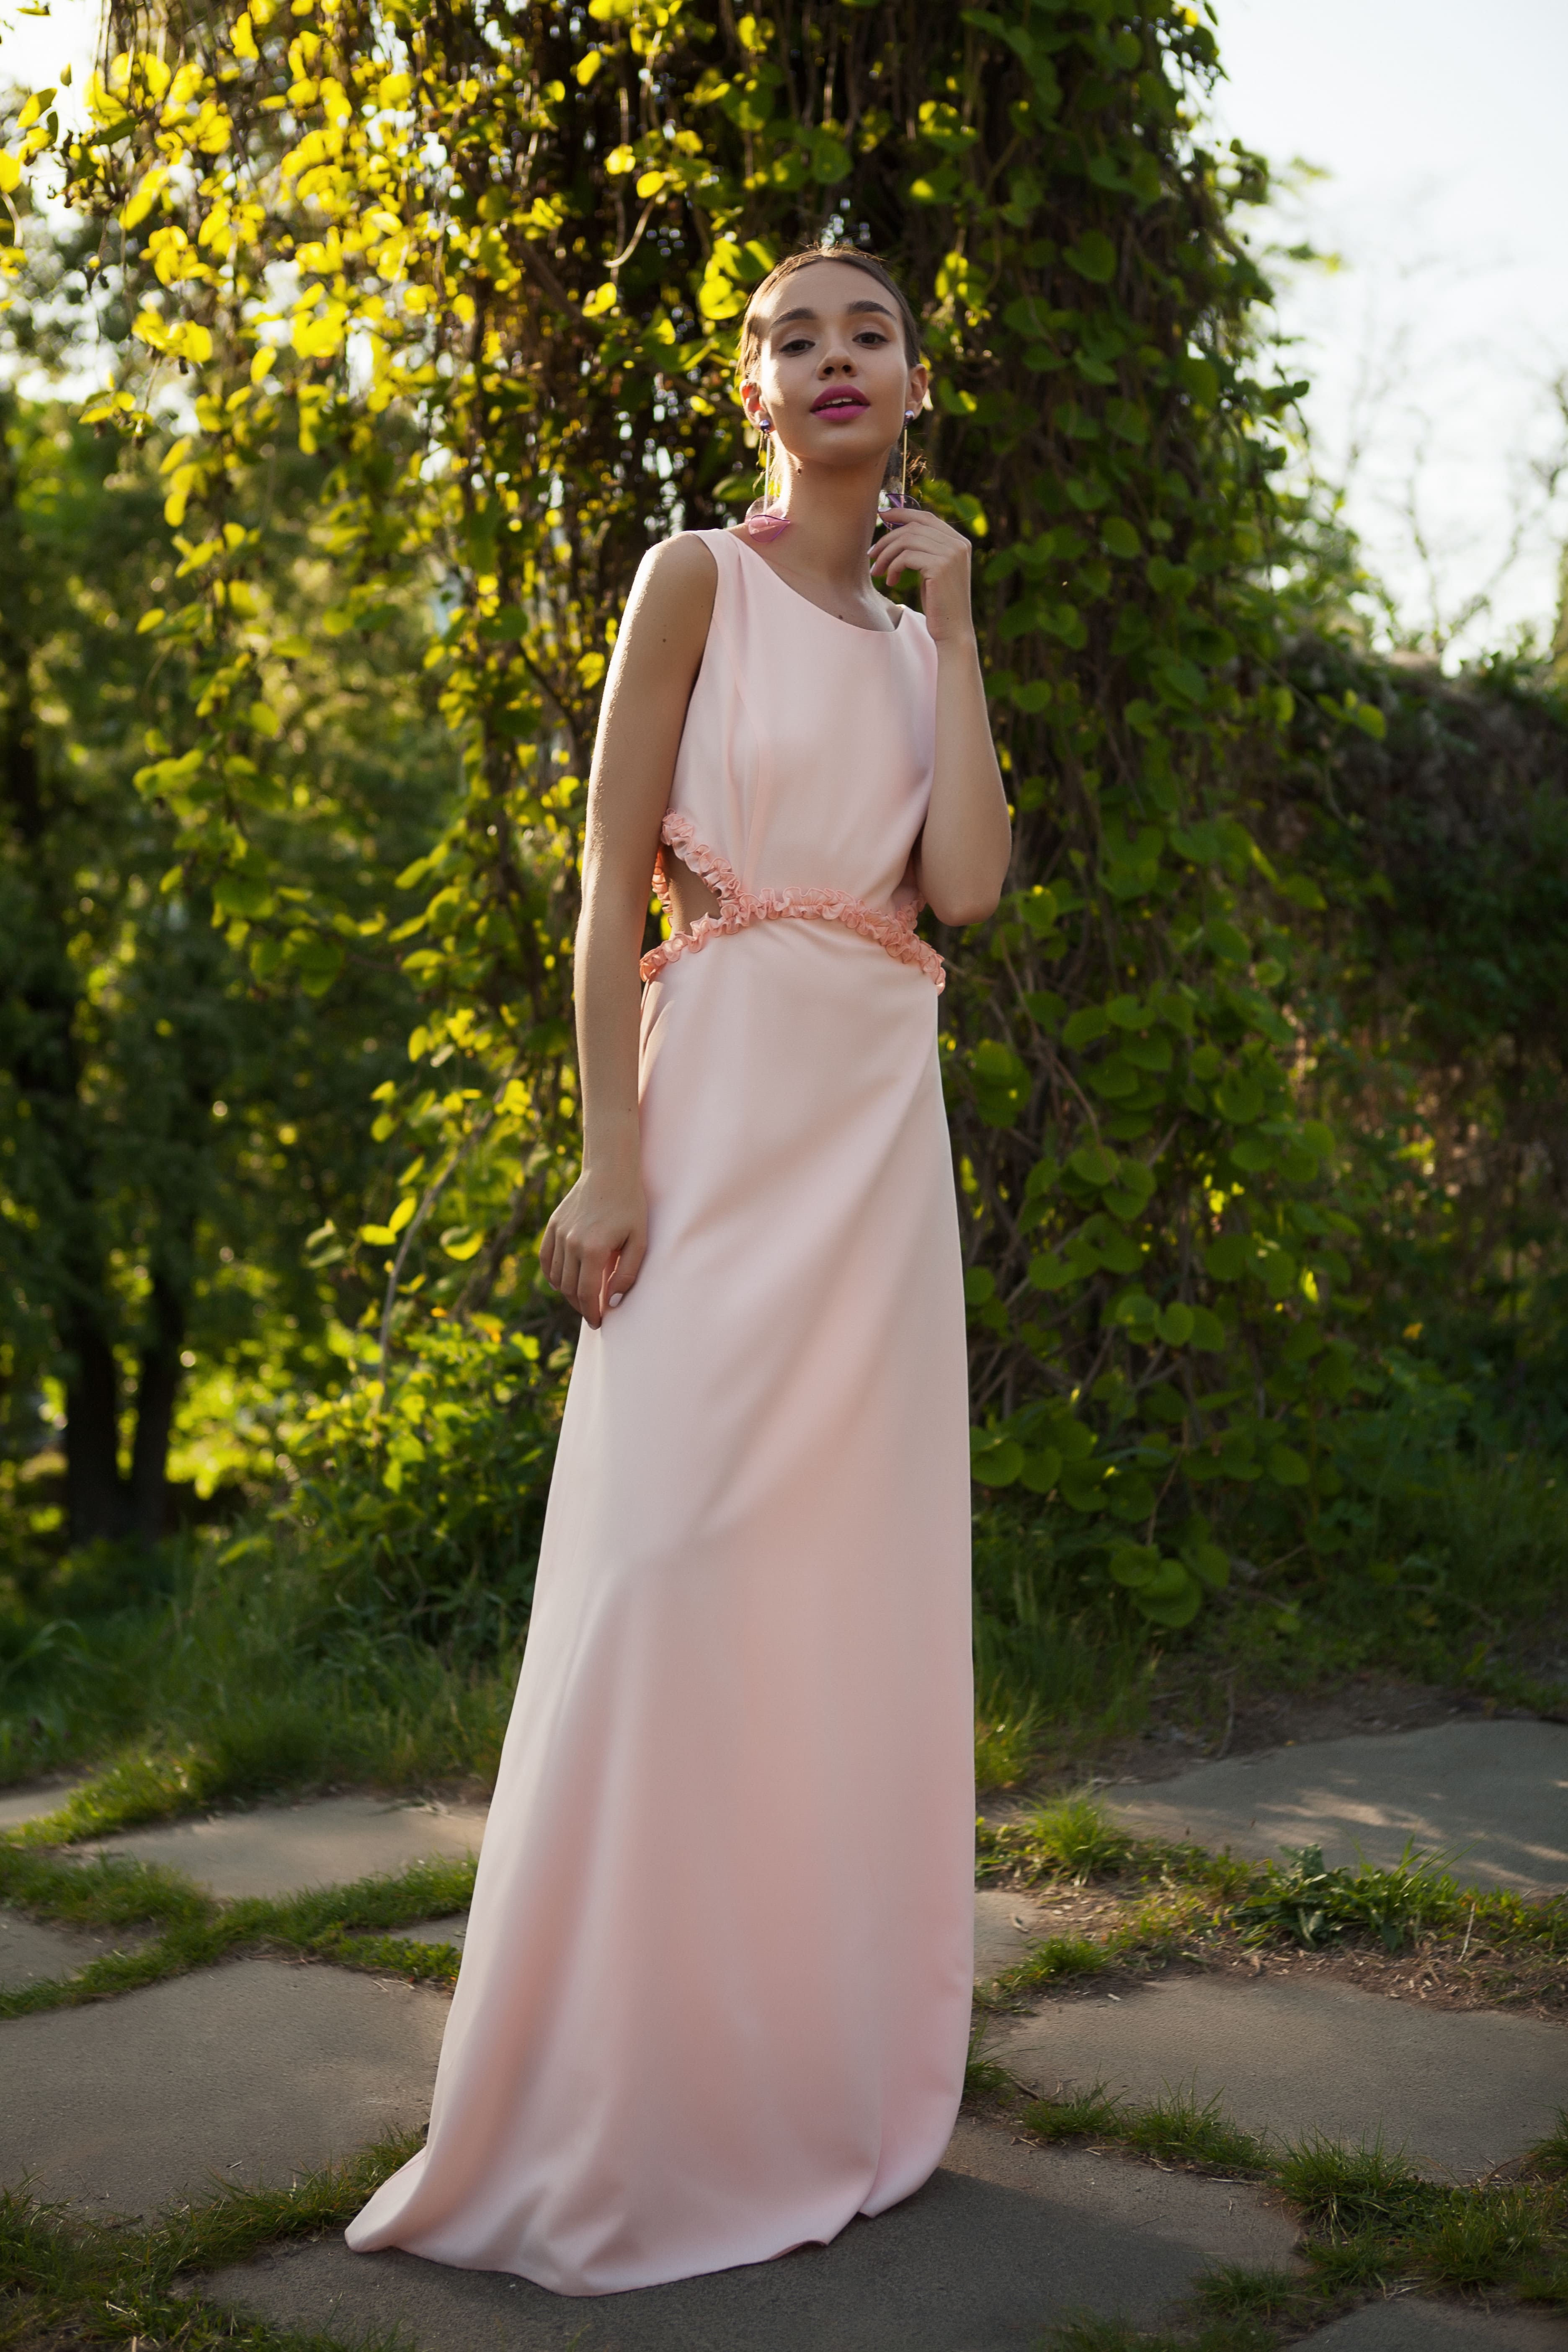 На Соломии пудровое платье в пол  #LOVE
Фото: Денис Груба
Макияж и укладка салон красоты "Руки Ножницы"